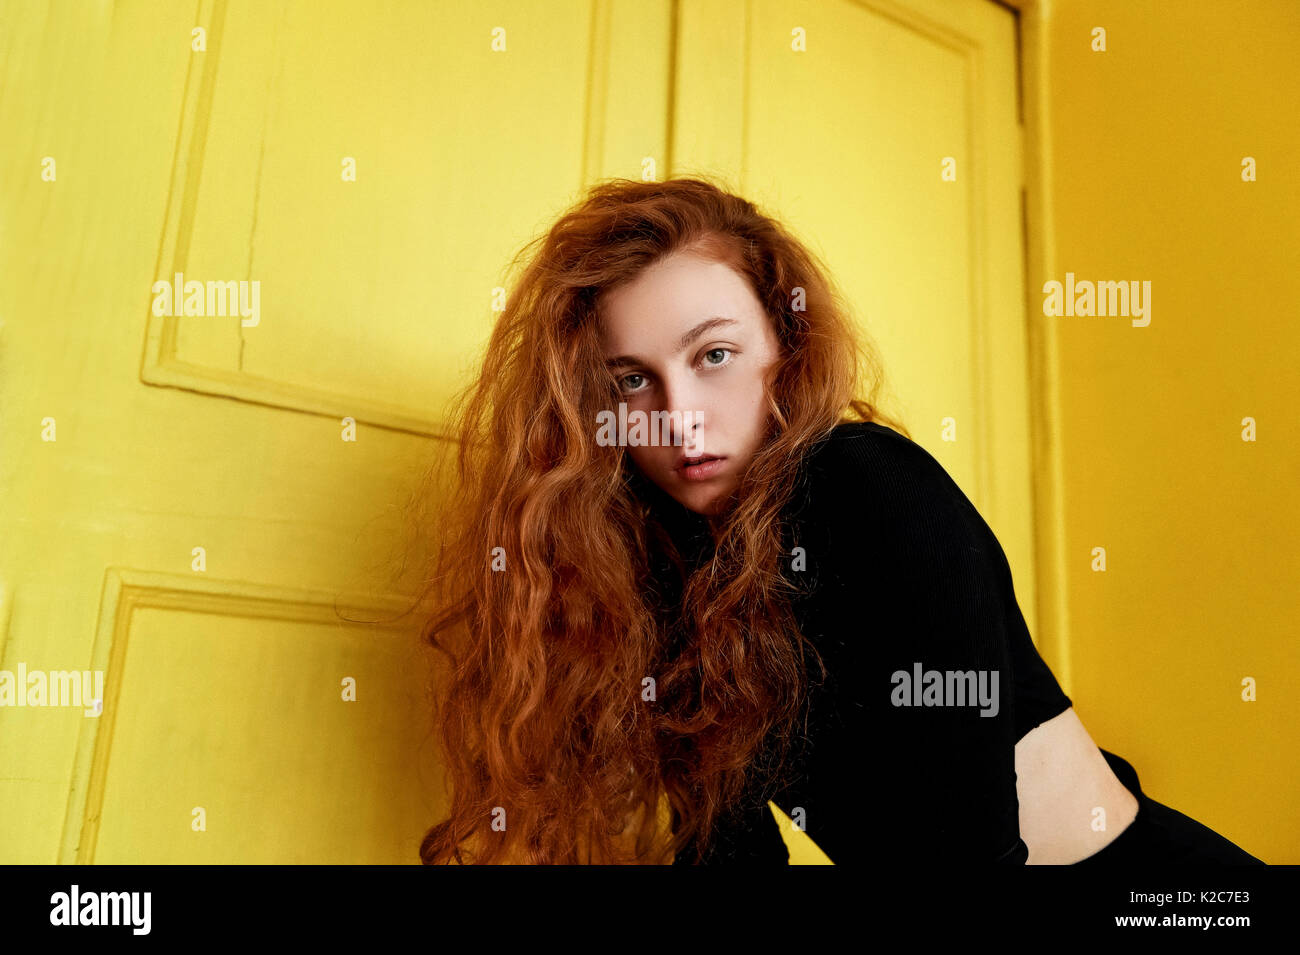 Les tests du modèle. Belle jeune fille rousse avec des cheveux bouclés. couleur naturelle. Grand contraste avec portes en bois jaune Photo Stock -  Alamy